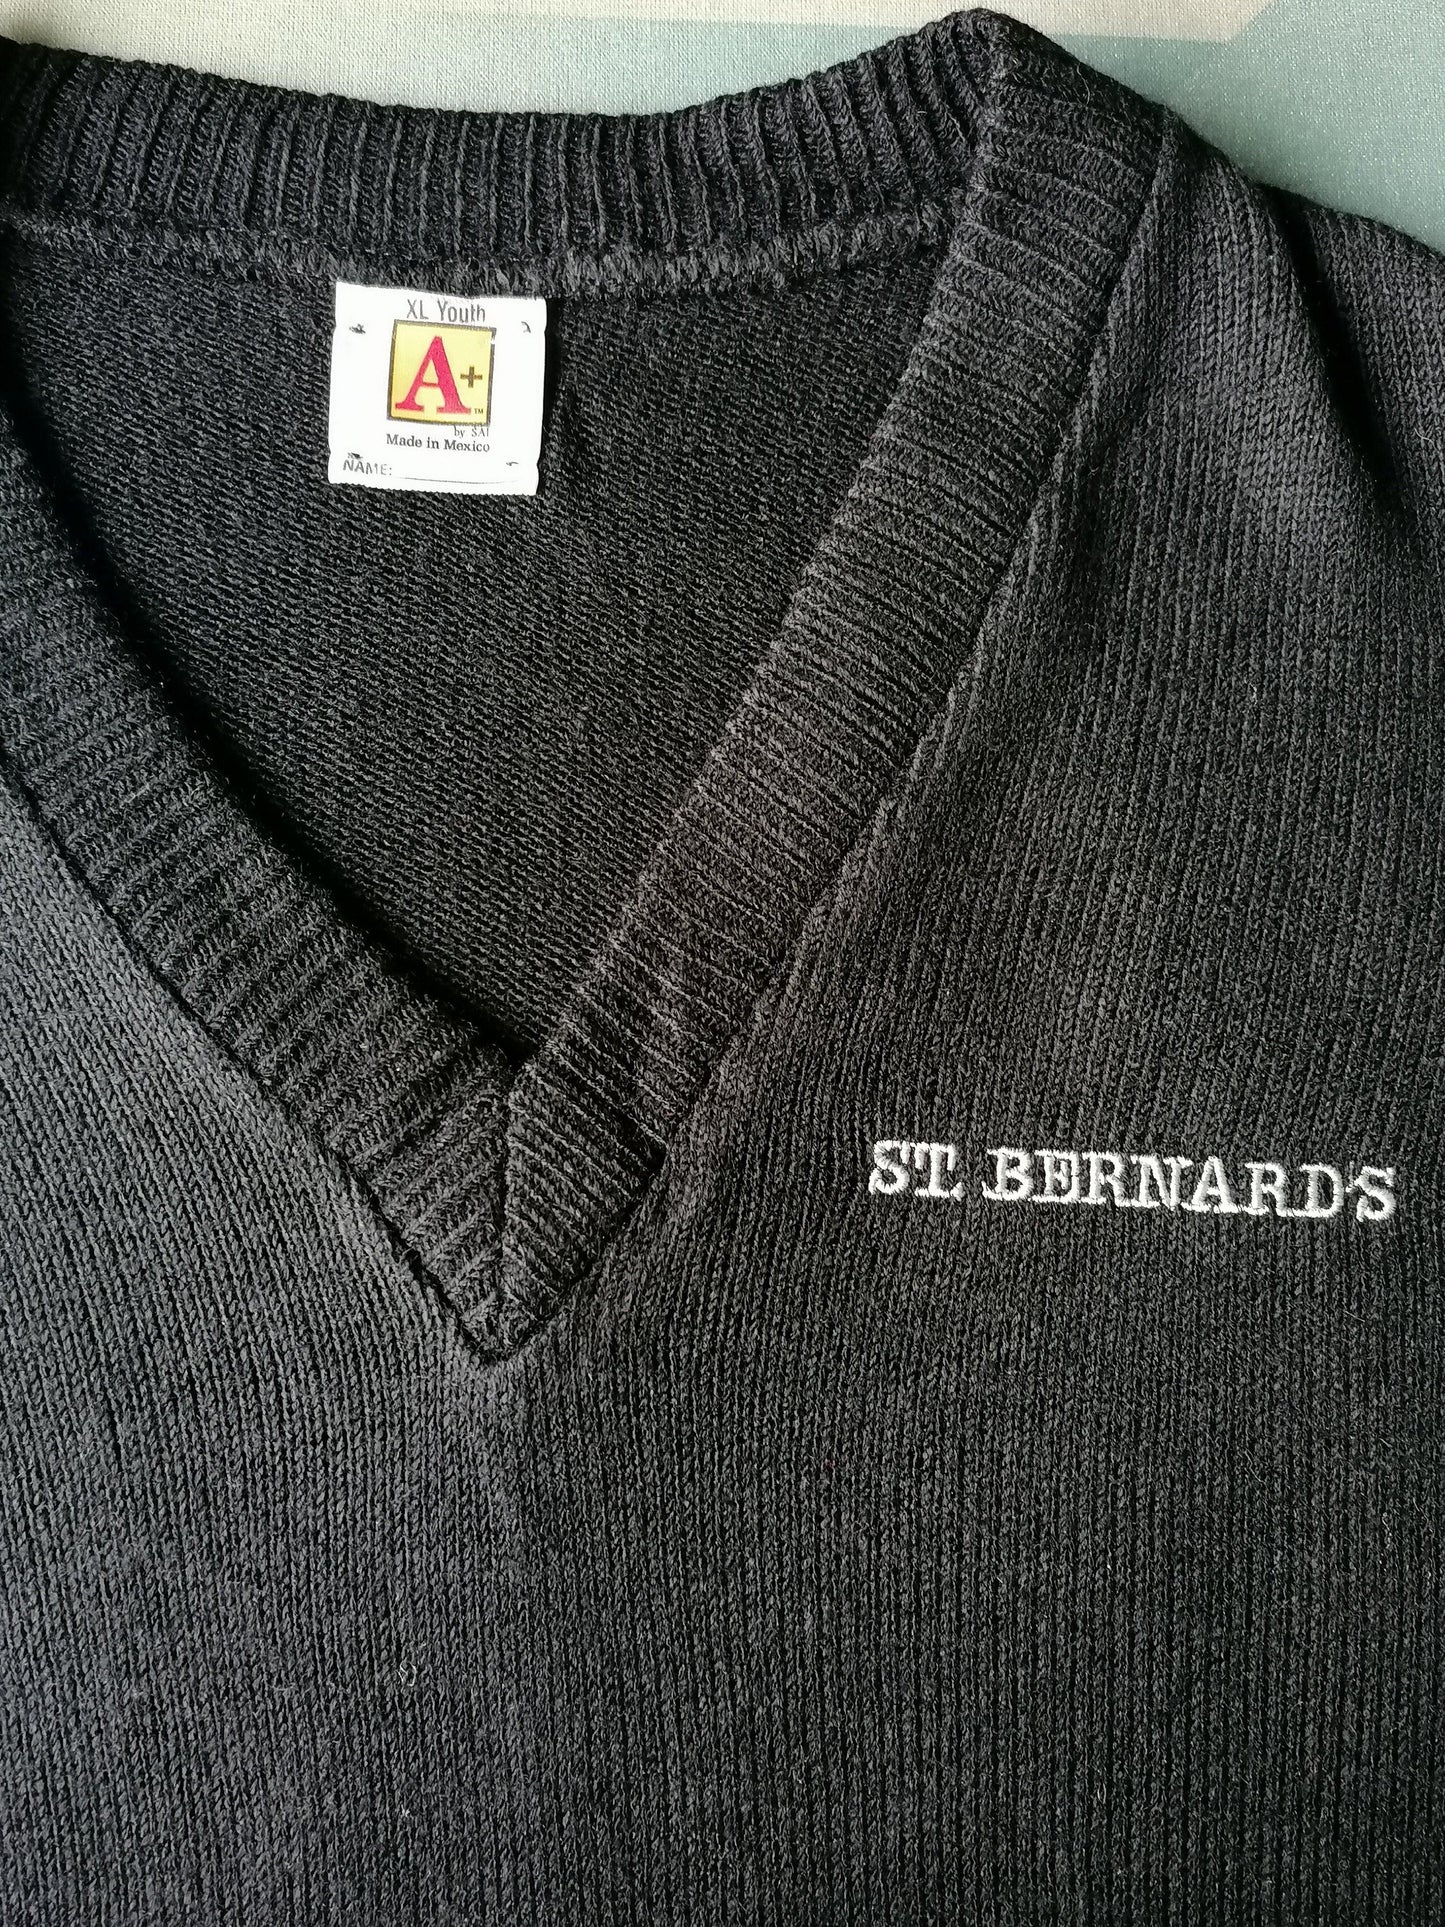 A+ "St. Bernards" Trui met v-hals. Donker Blauw gekleurd. Maat S. - EcoGents